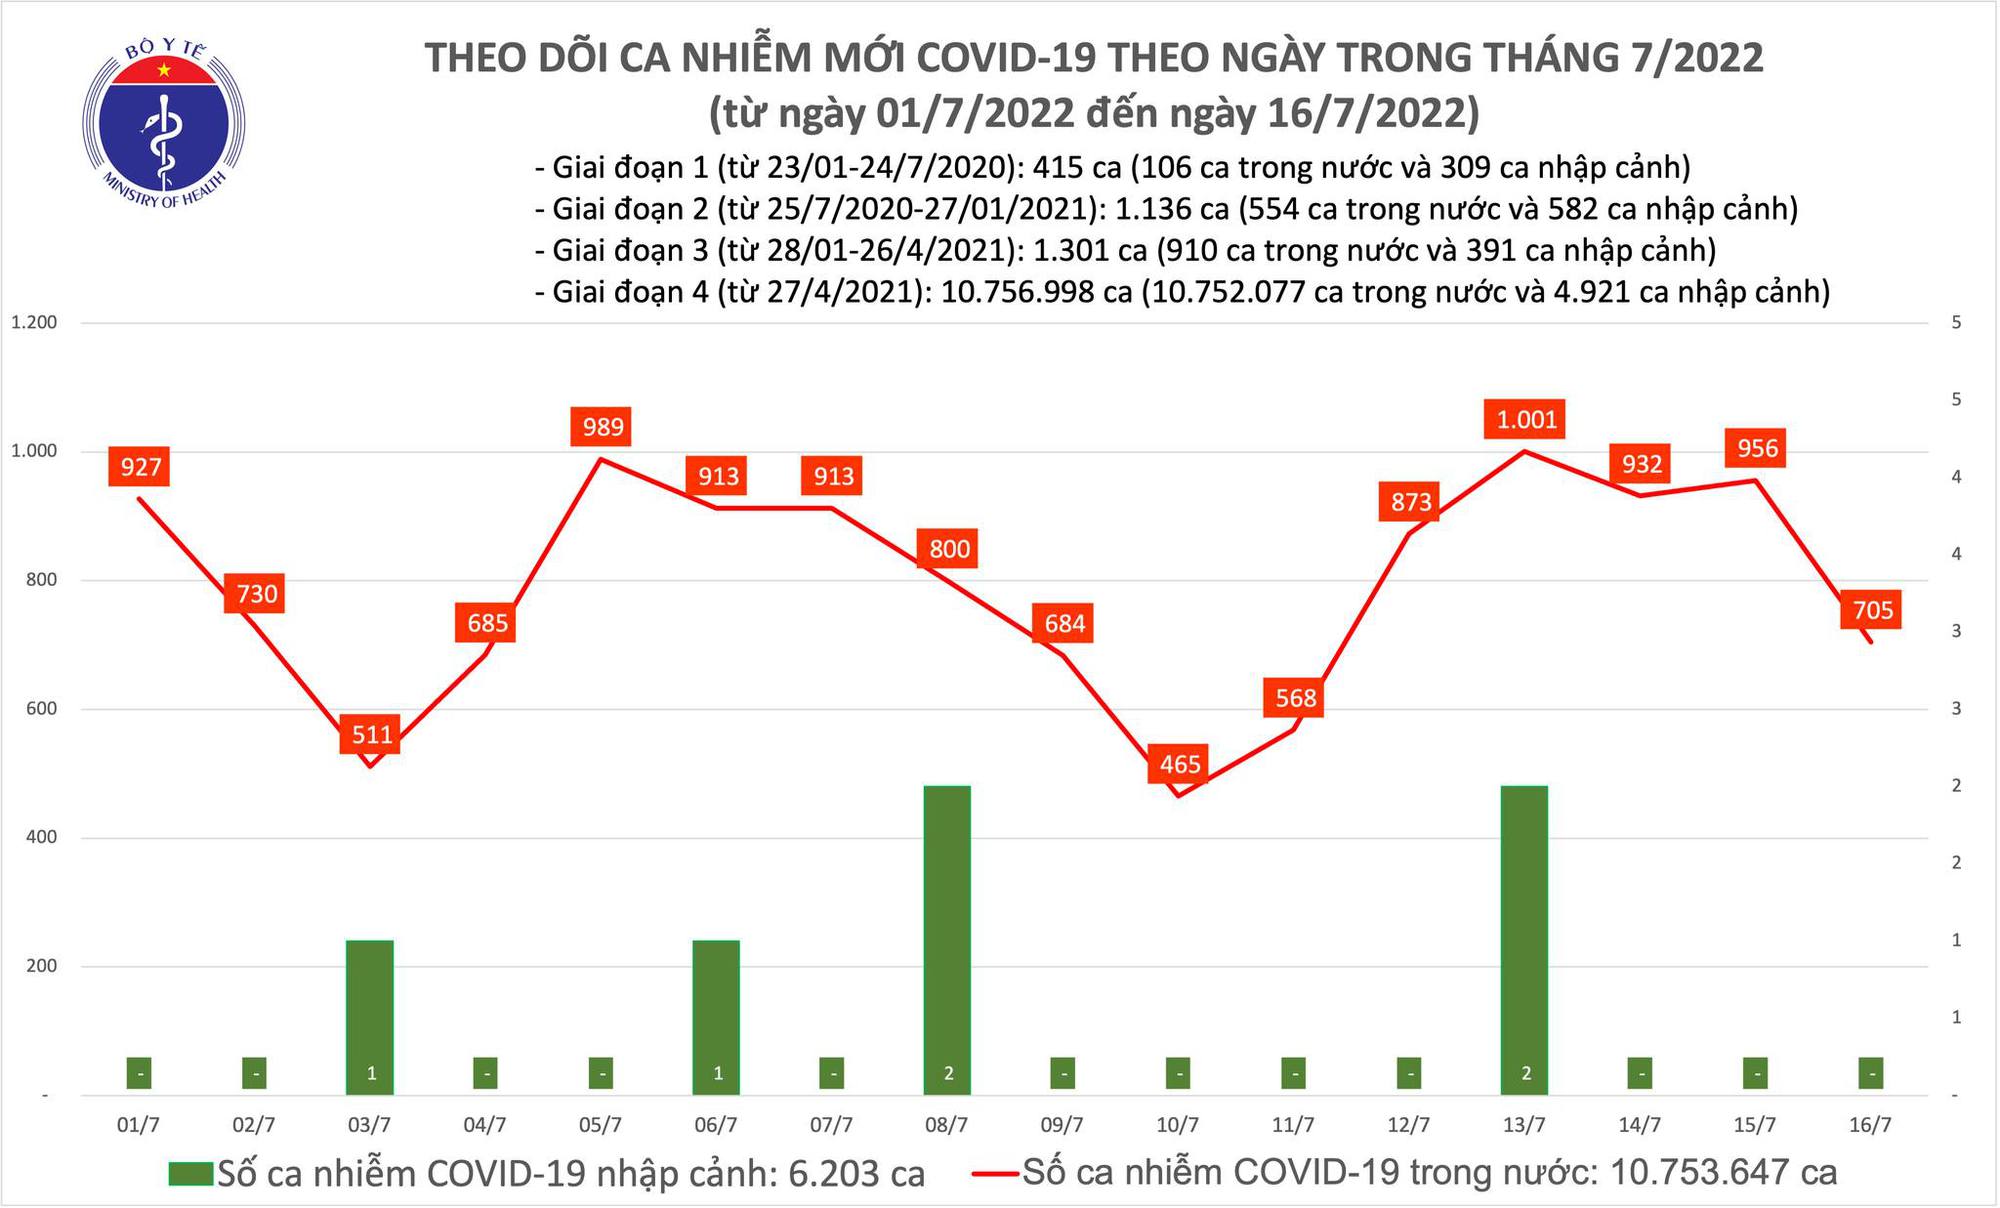 Ngày 16/7: Có 705 ca COVID-19 mới, bệnh nhân nặng tăng lên - Ảnh 1.